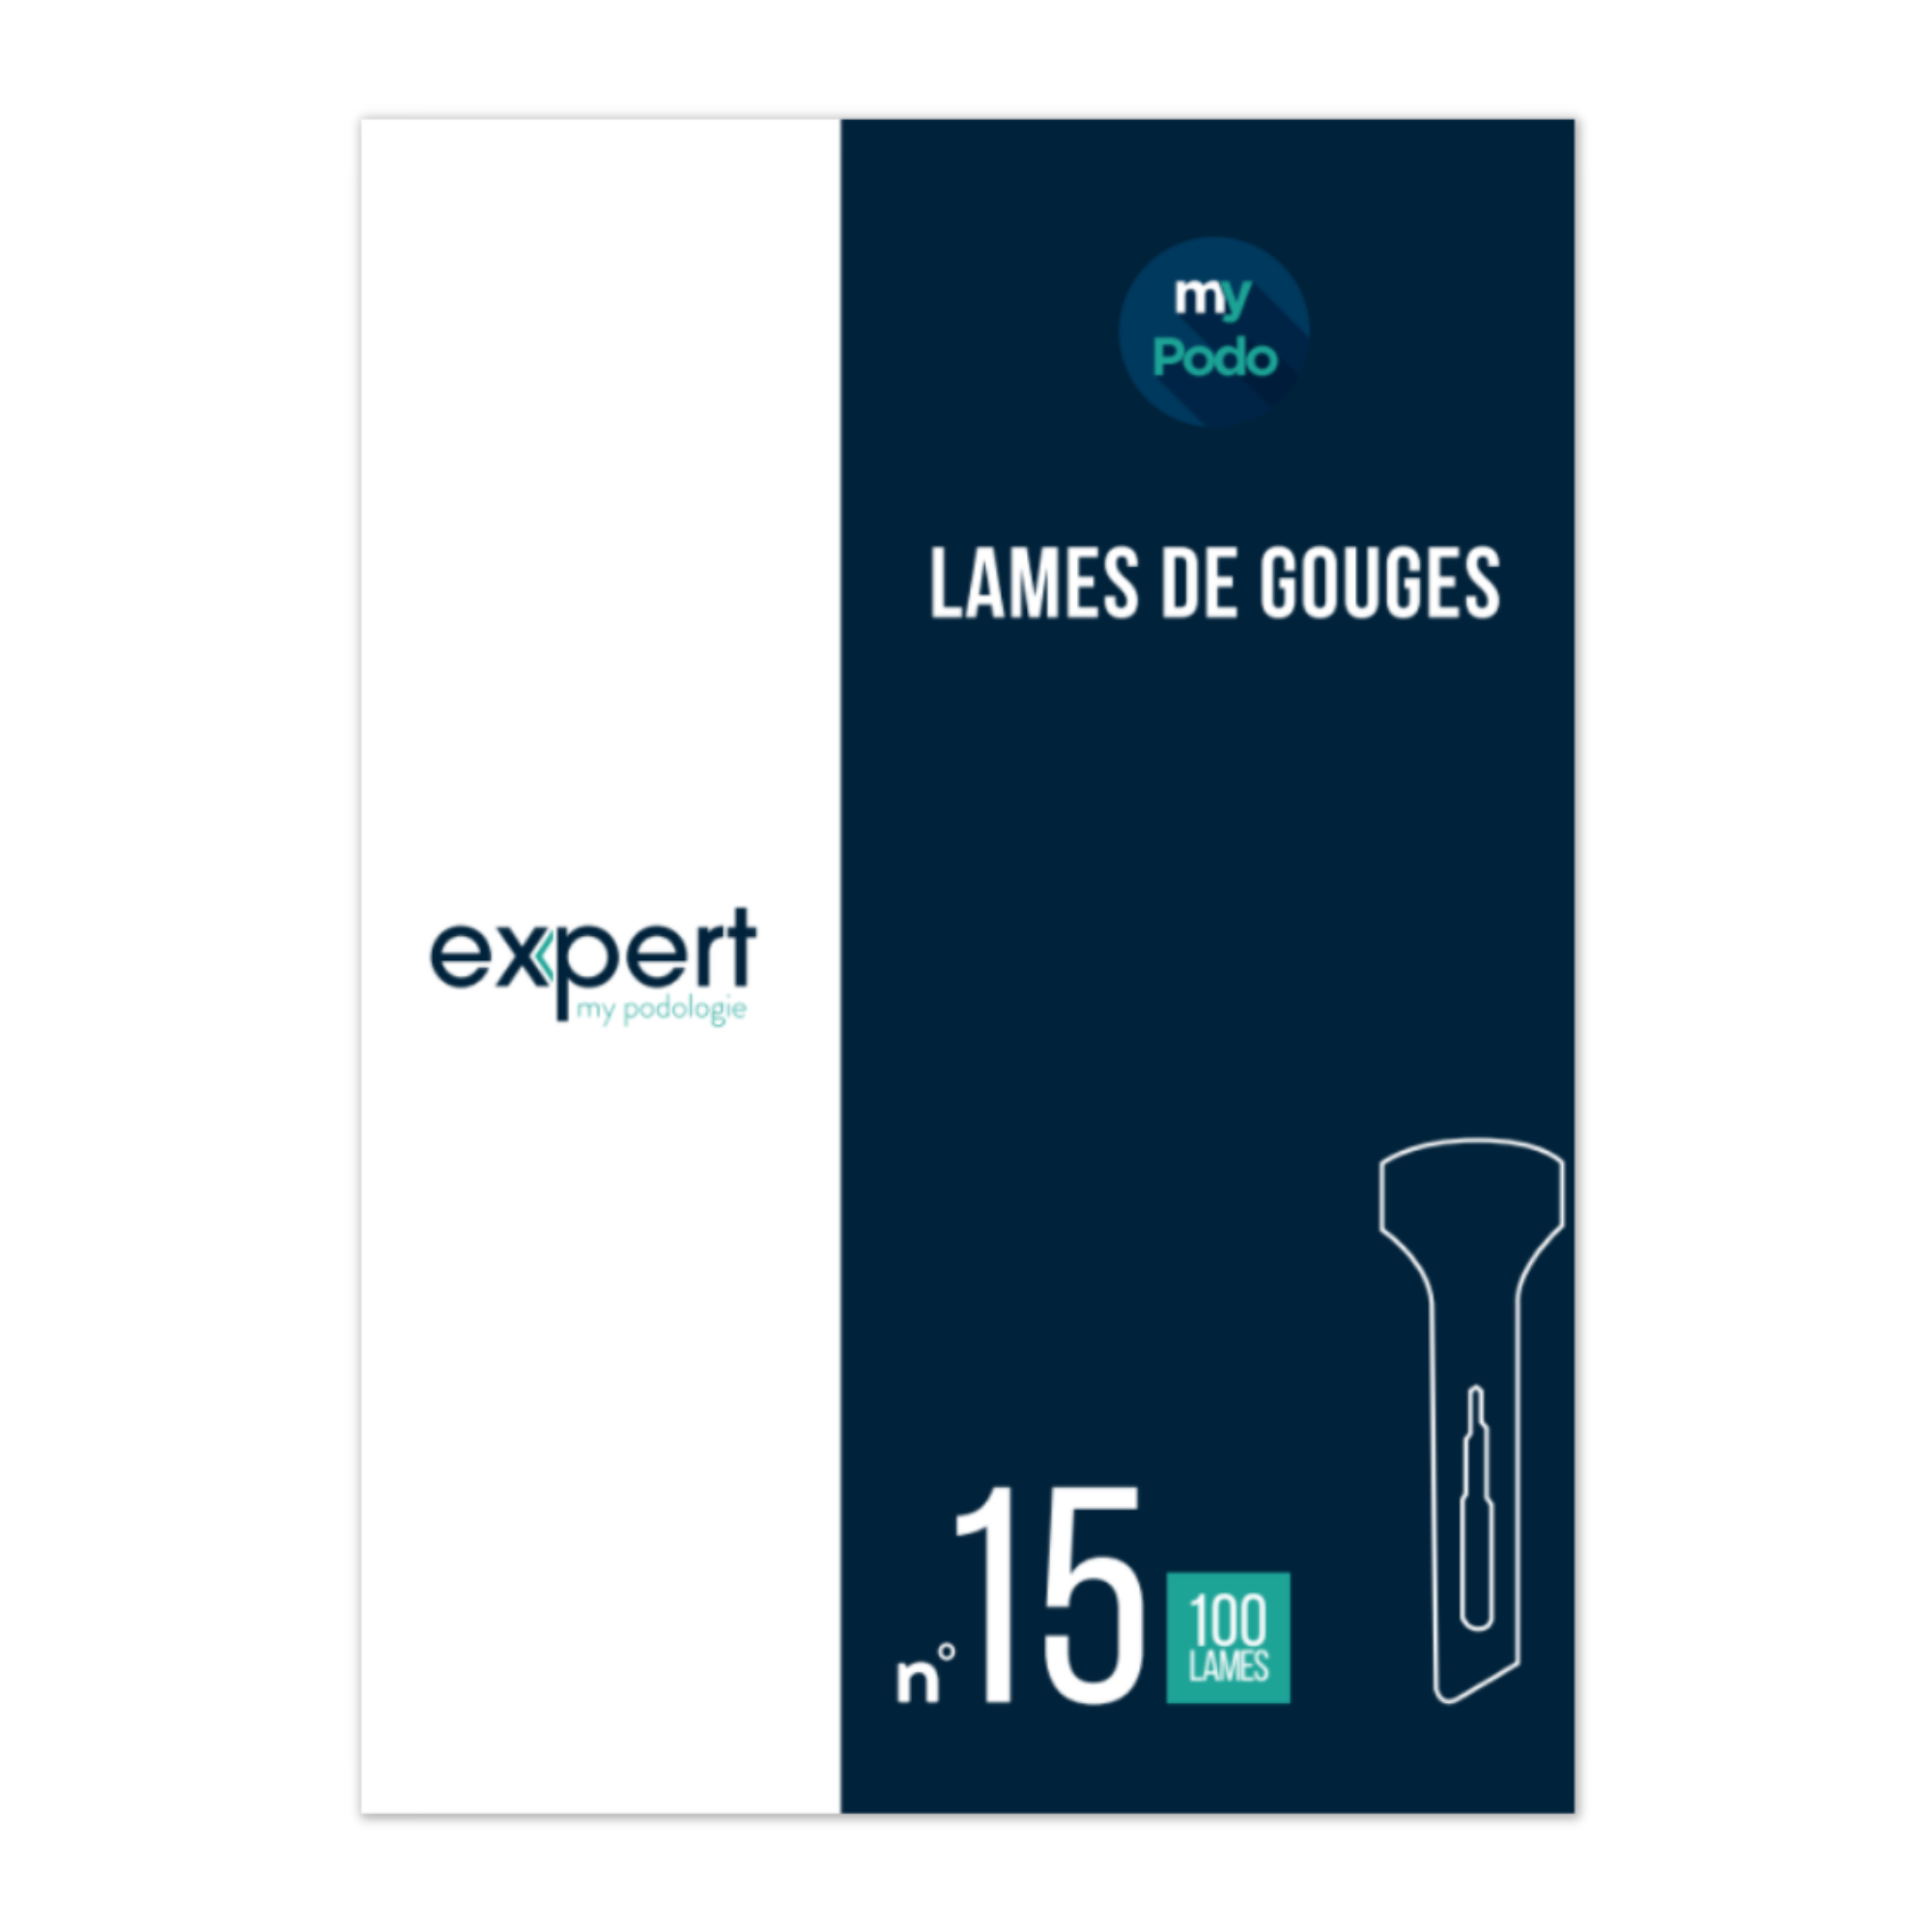 100 Lames de gouges stériles - Expert by My Podologie